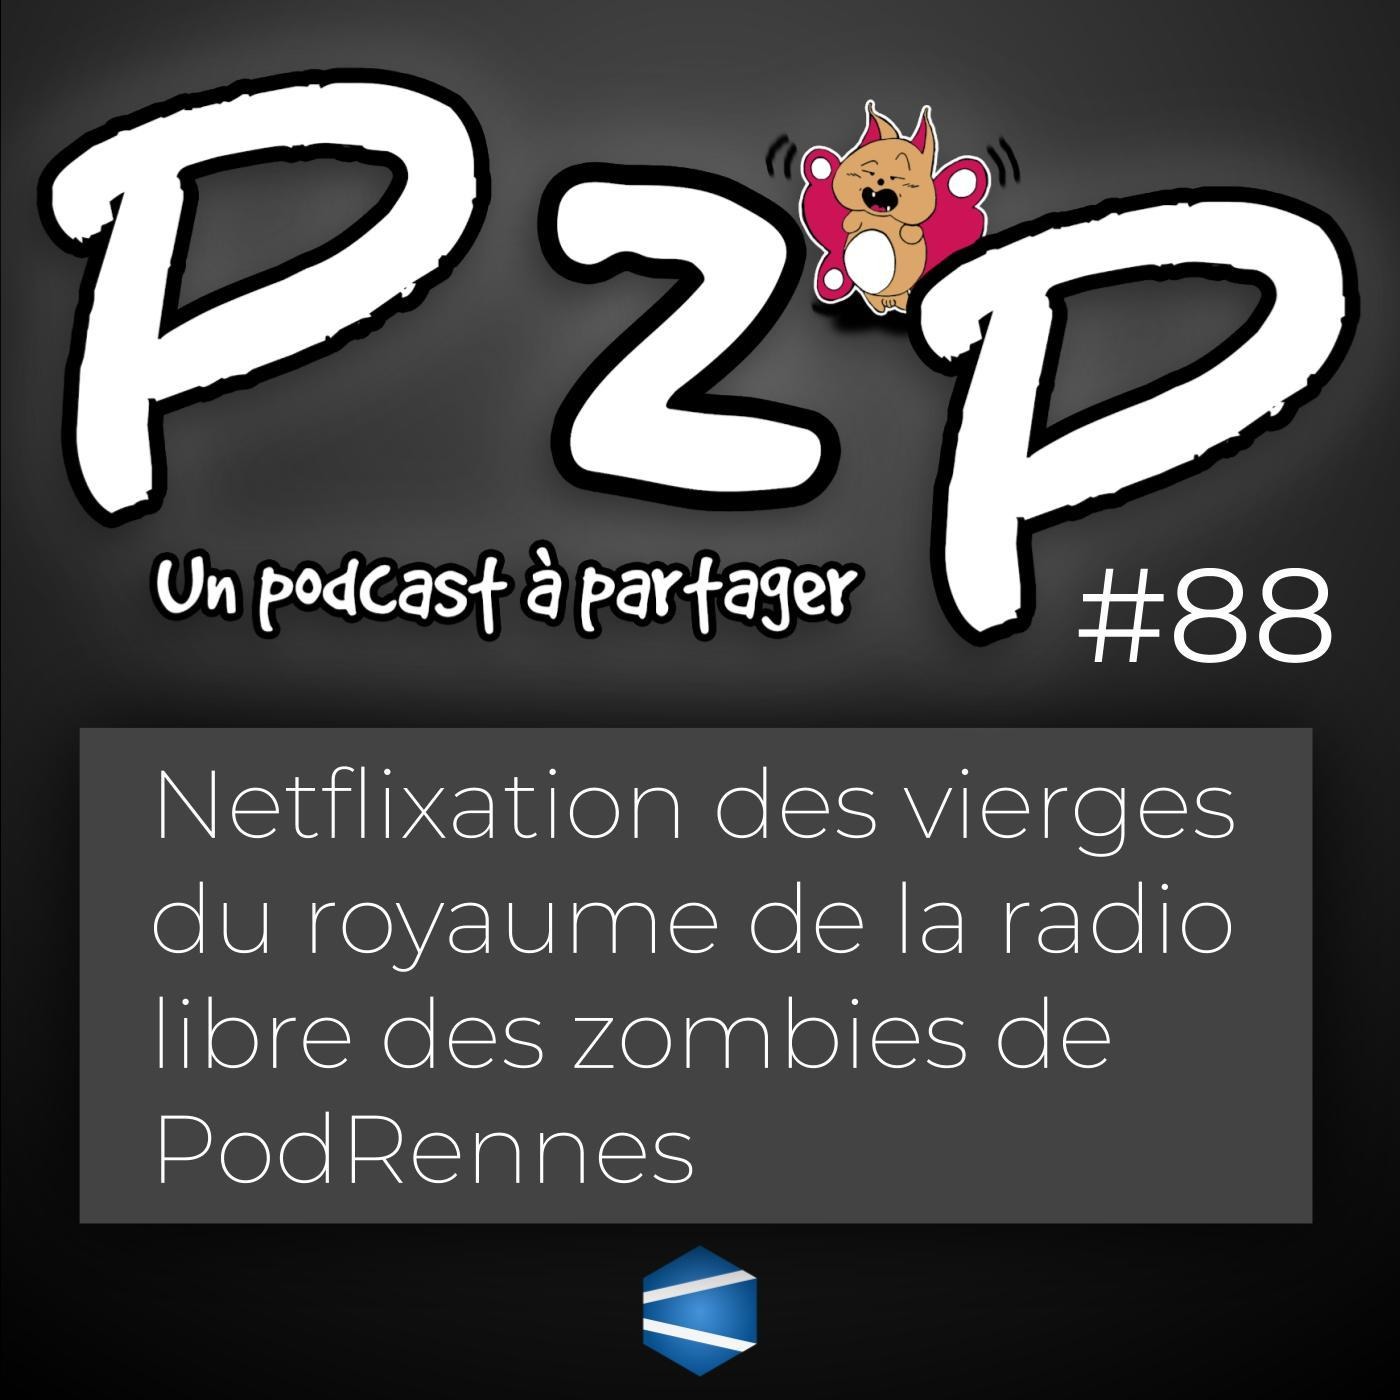 P2P 88 : Netflixation des vierges du royaume de la radio libre des zombies de PodRennes